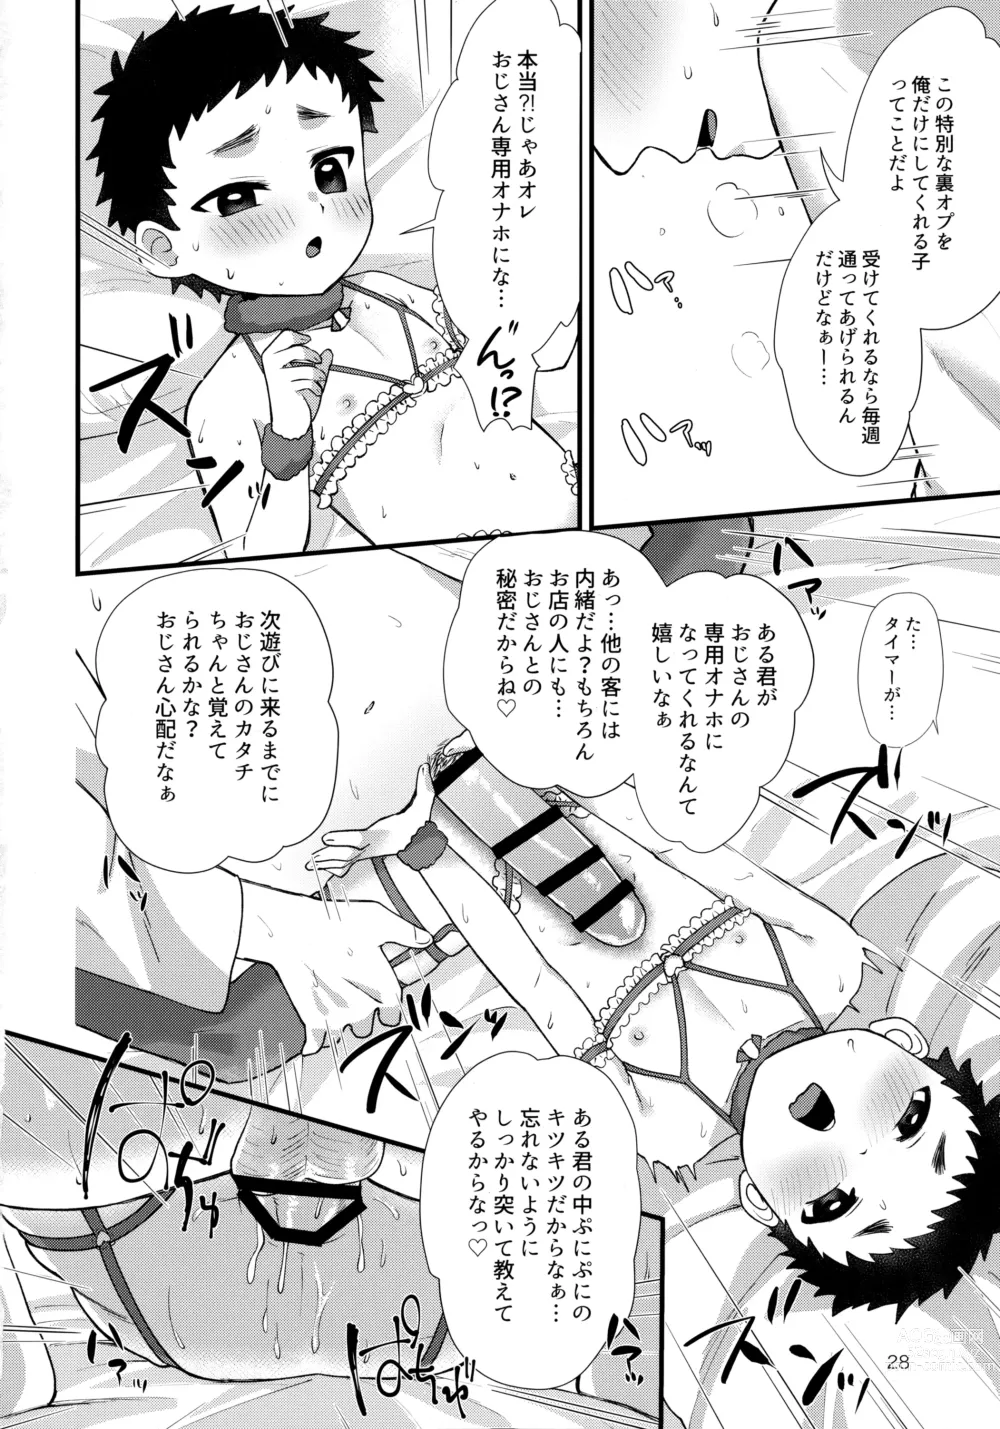 Page 27 of doujinshi Otoko no ko Rifure